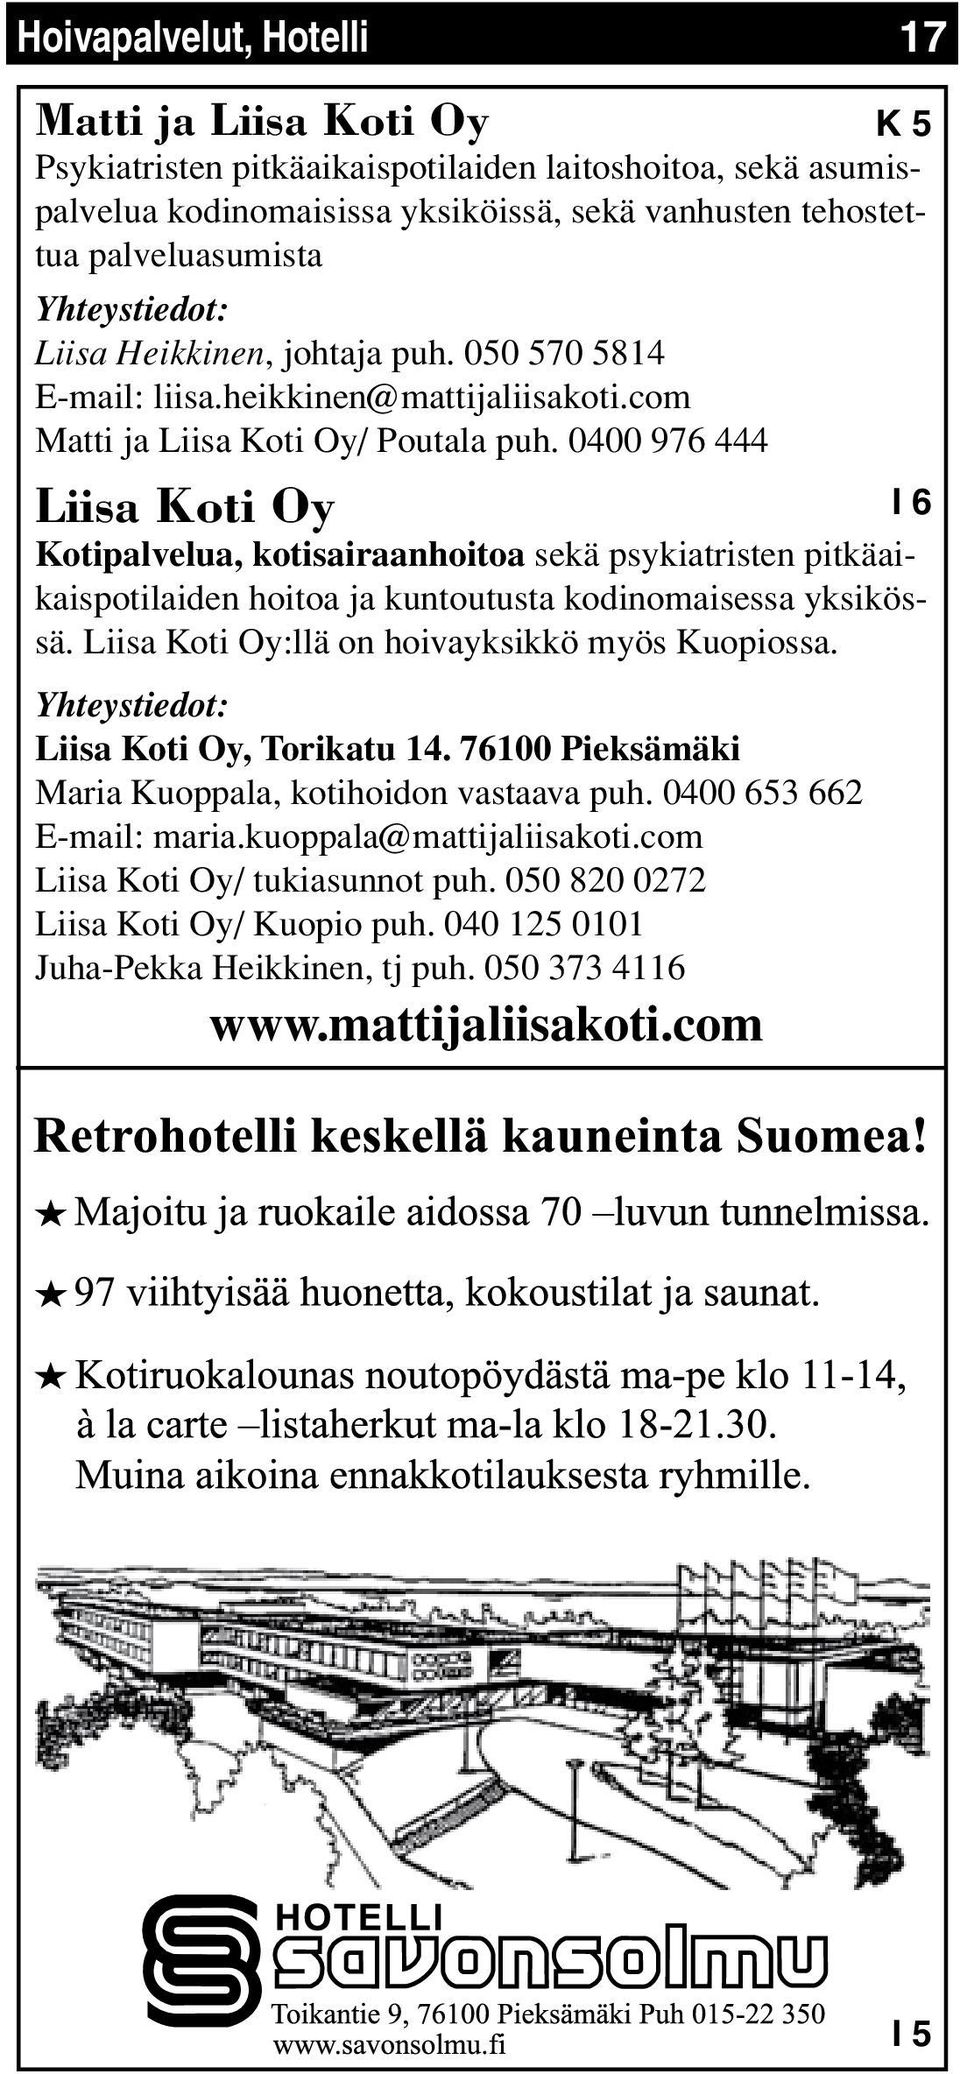 0400 976 444 Liisa Koti Oy Kotipalvelua, kotisairaanhoitoa sekä psykiatristen pitkäaikaispotilaiden hoitoa ja kuntoutusta kodinomaisessa yksikössä. Liisa Koti Oy:llä on hoivayksikkö myös Kuopiossa.